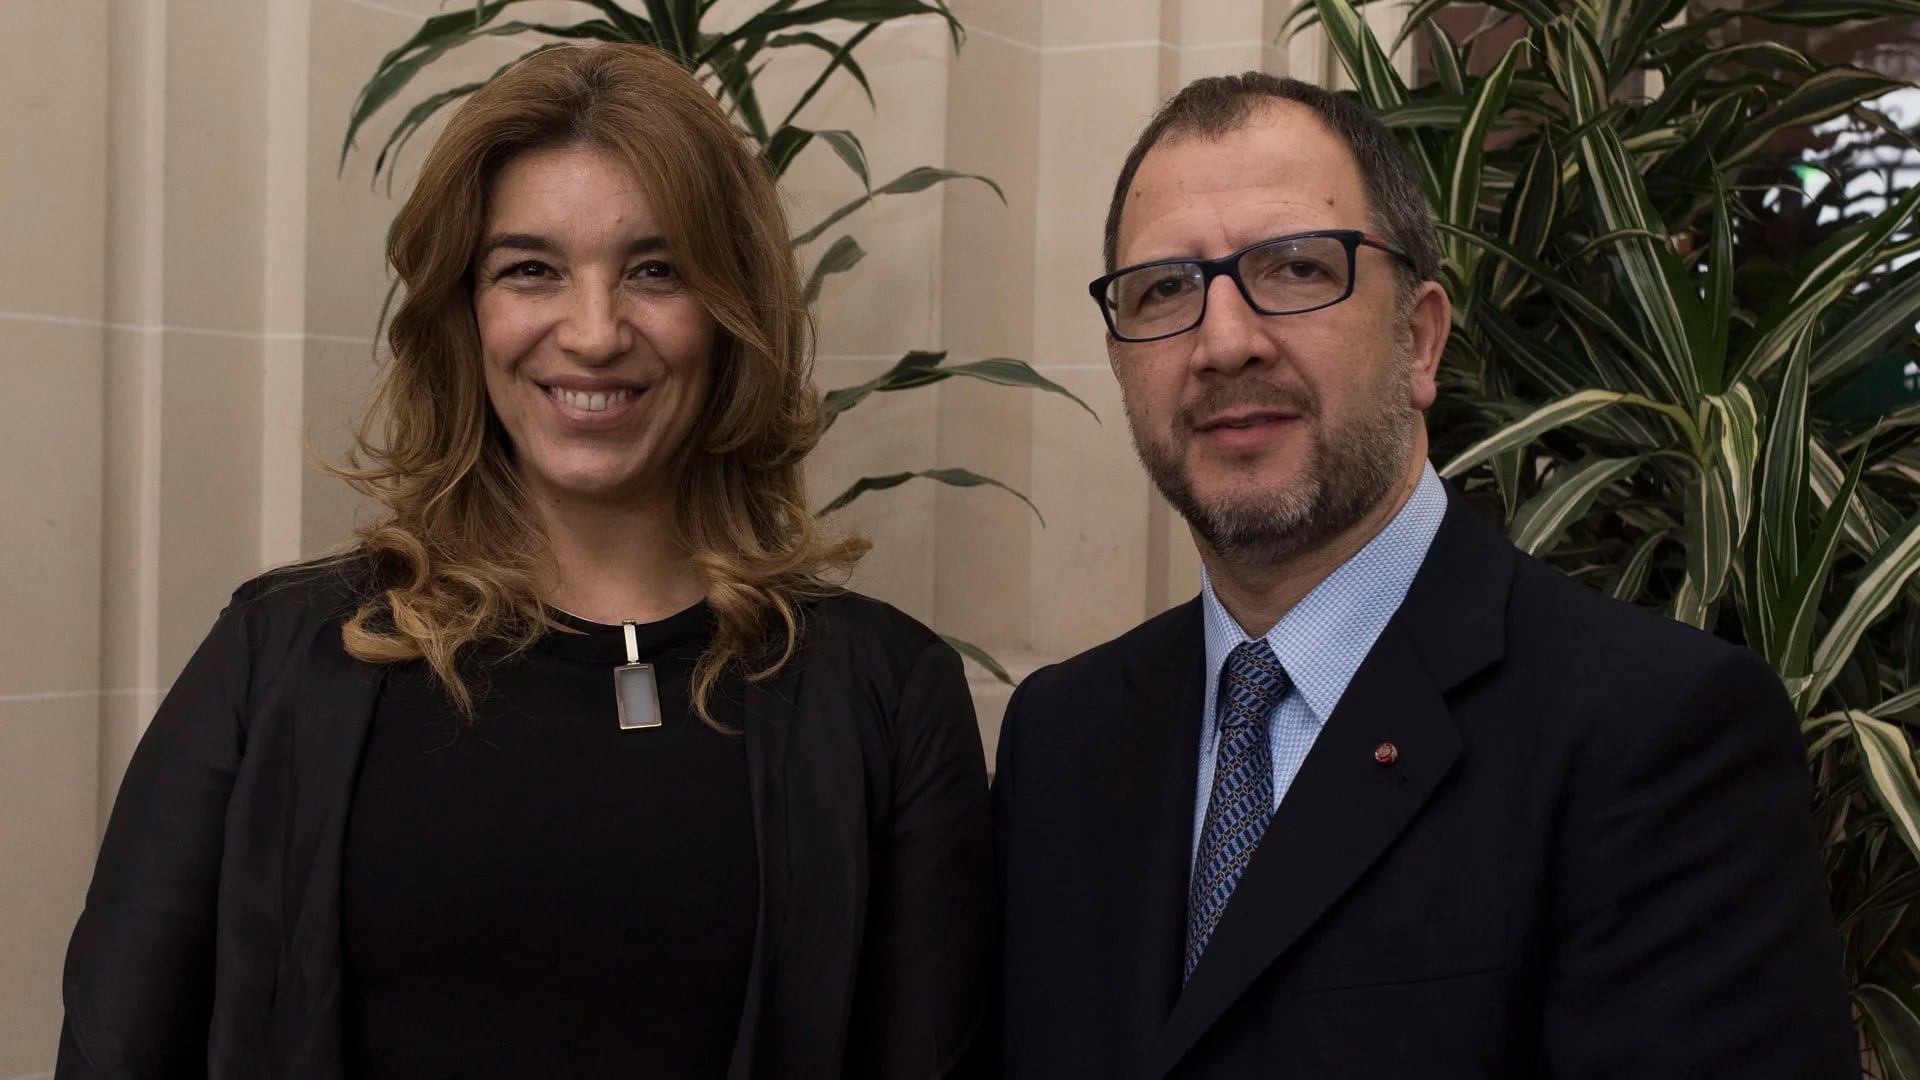 Fabián Perechodnik, secretario general del Gobierno de la Provincia de Buenos Aires, y su esposa Gabriela Solustri